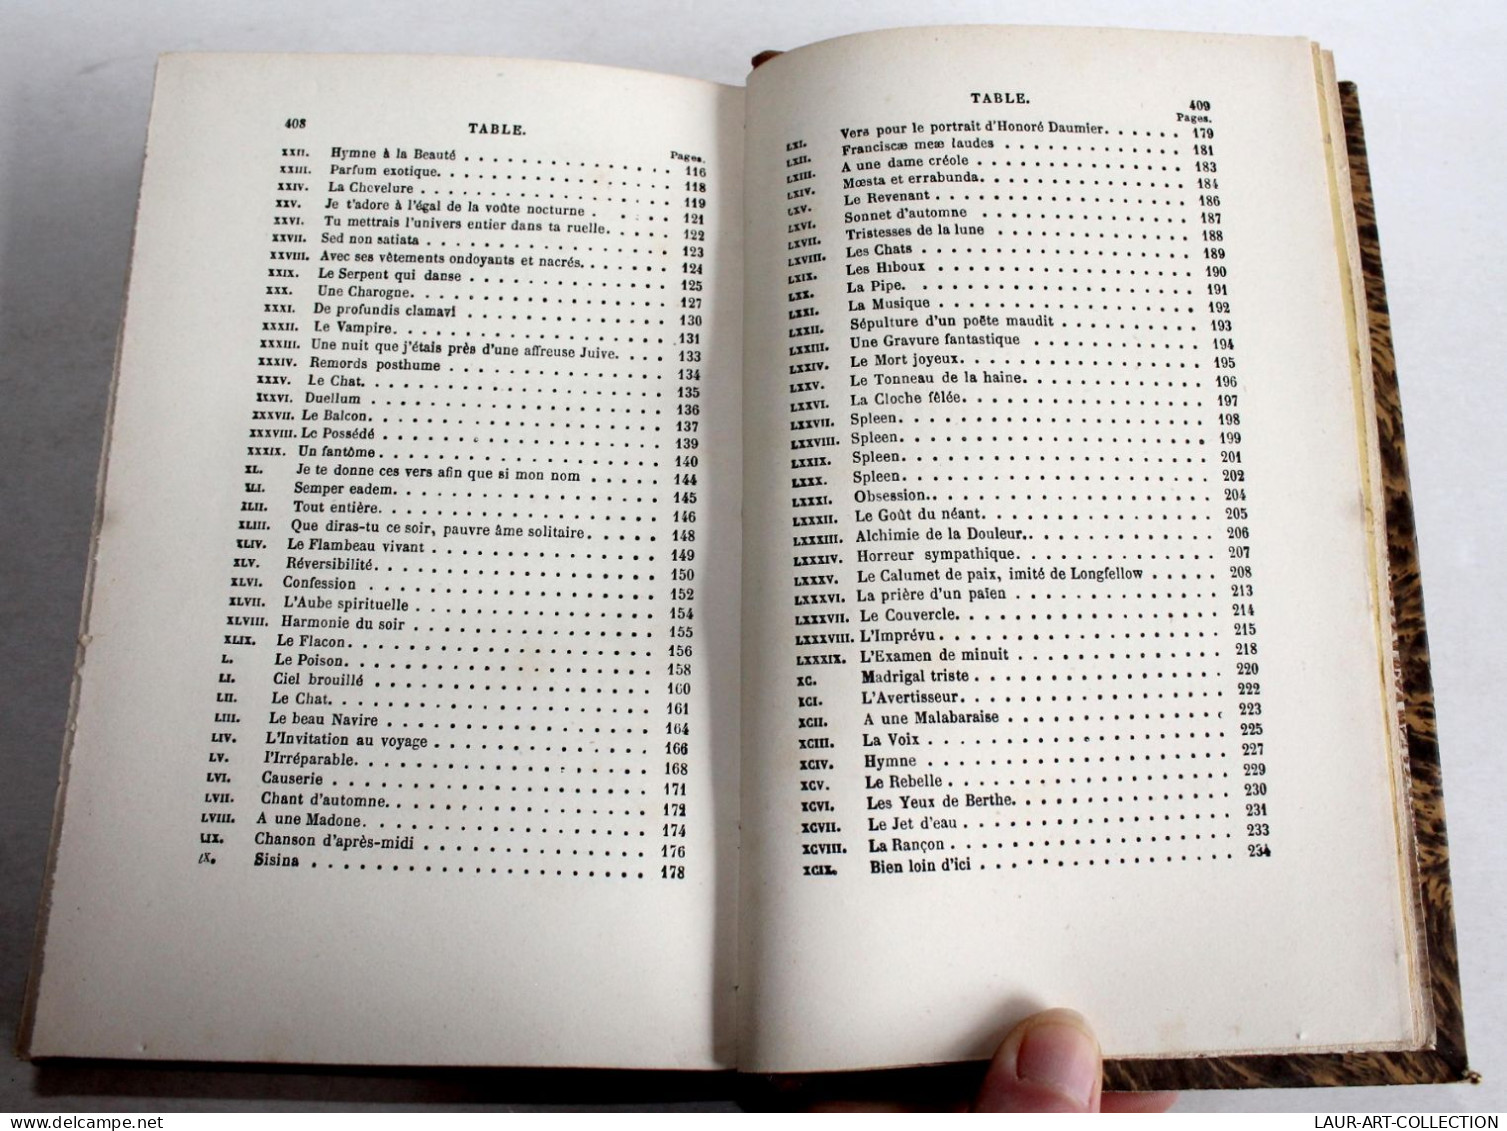 BAUDELAIRE OEUVRES COMPLETE FLEURS DU MAL EDITION DEFINITIVE NOTICE GAUTIER 1857, LIVRE ANCIEN XIXe SIECLE (2204.69)